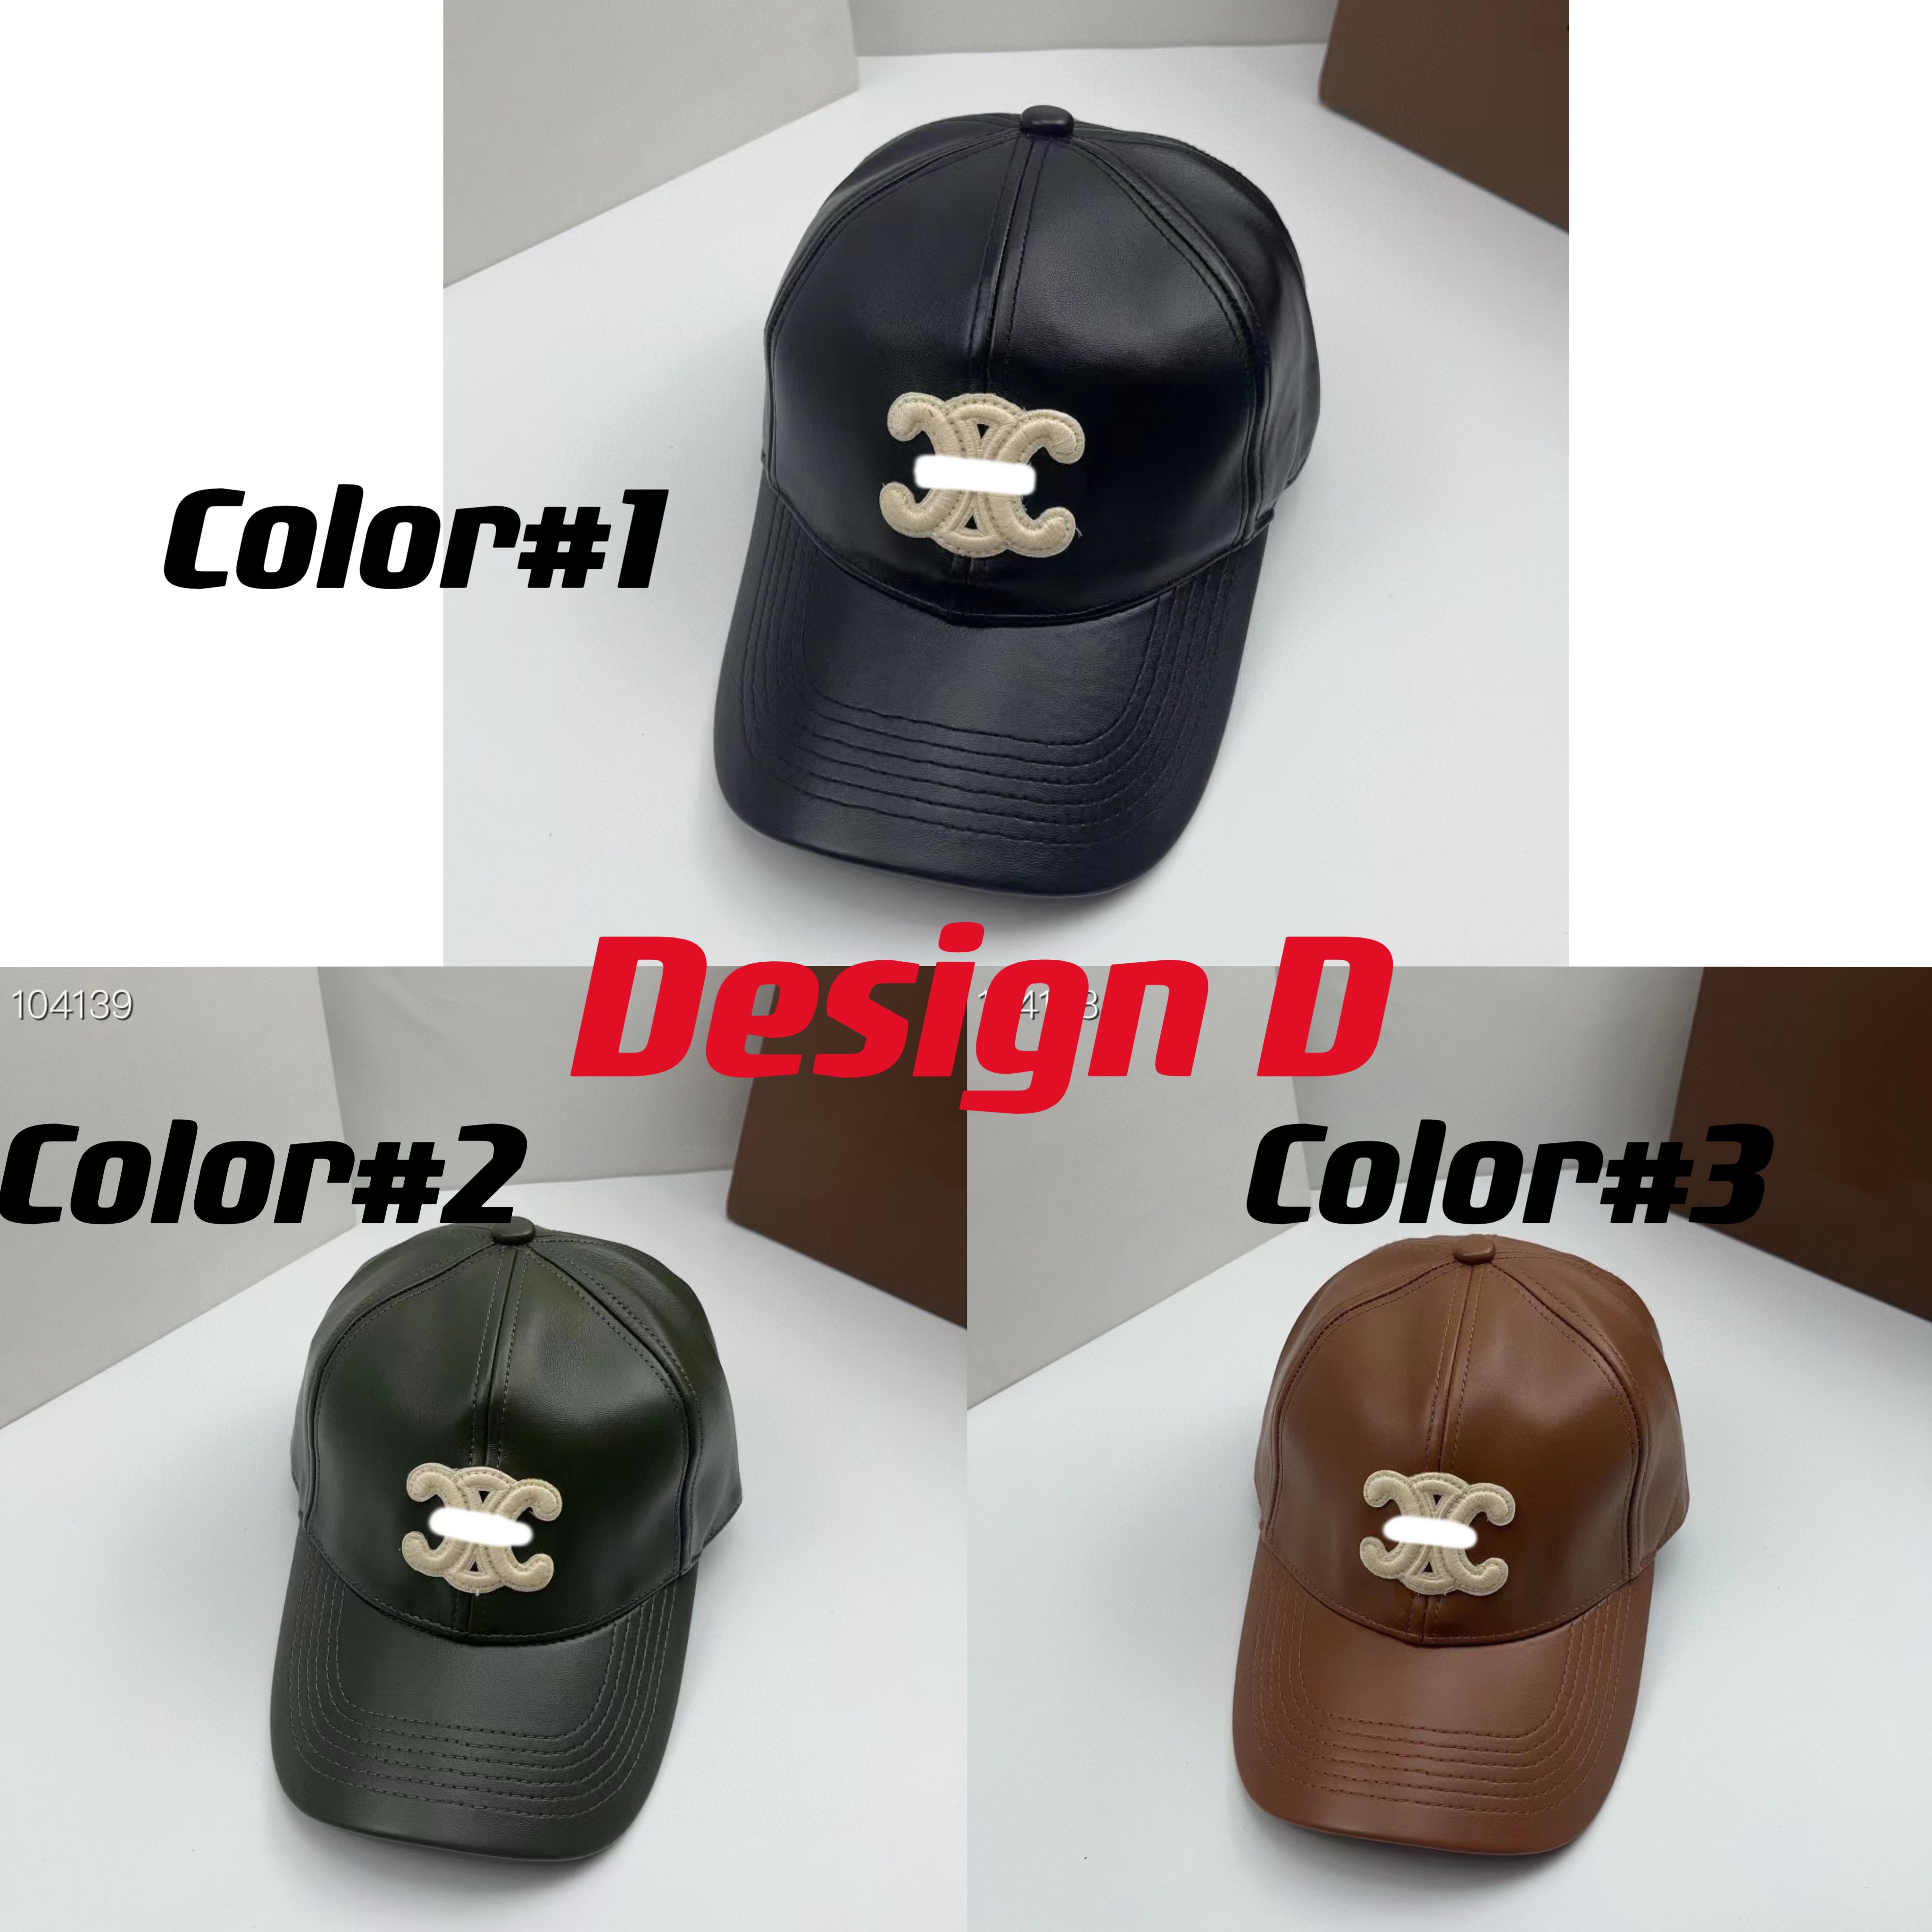 Designer chapéu balde chapéu designer moda boné de beisebol quatro projetos celi chapéus misturar cores das mulheres bonés casquette casual